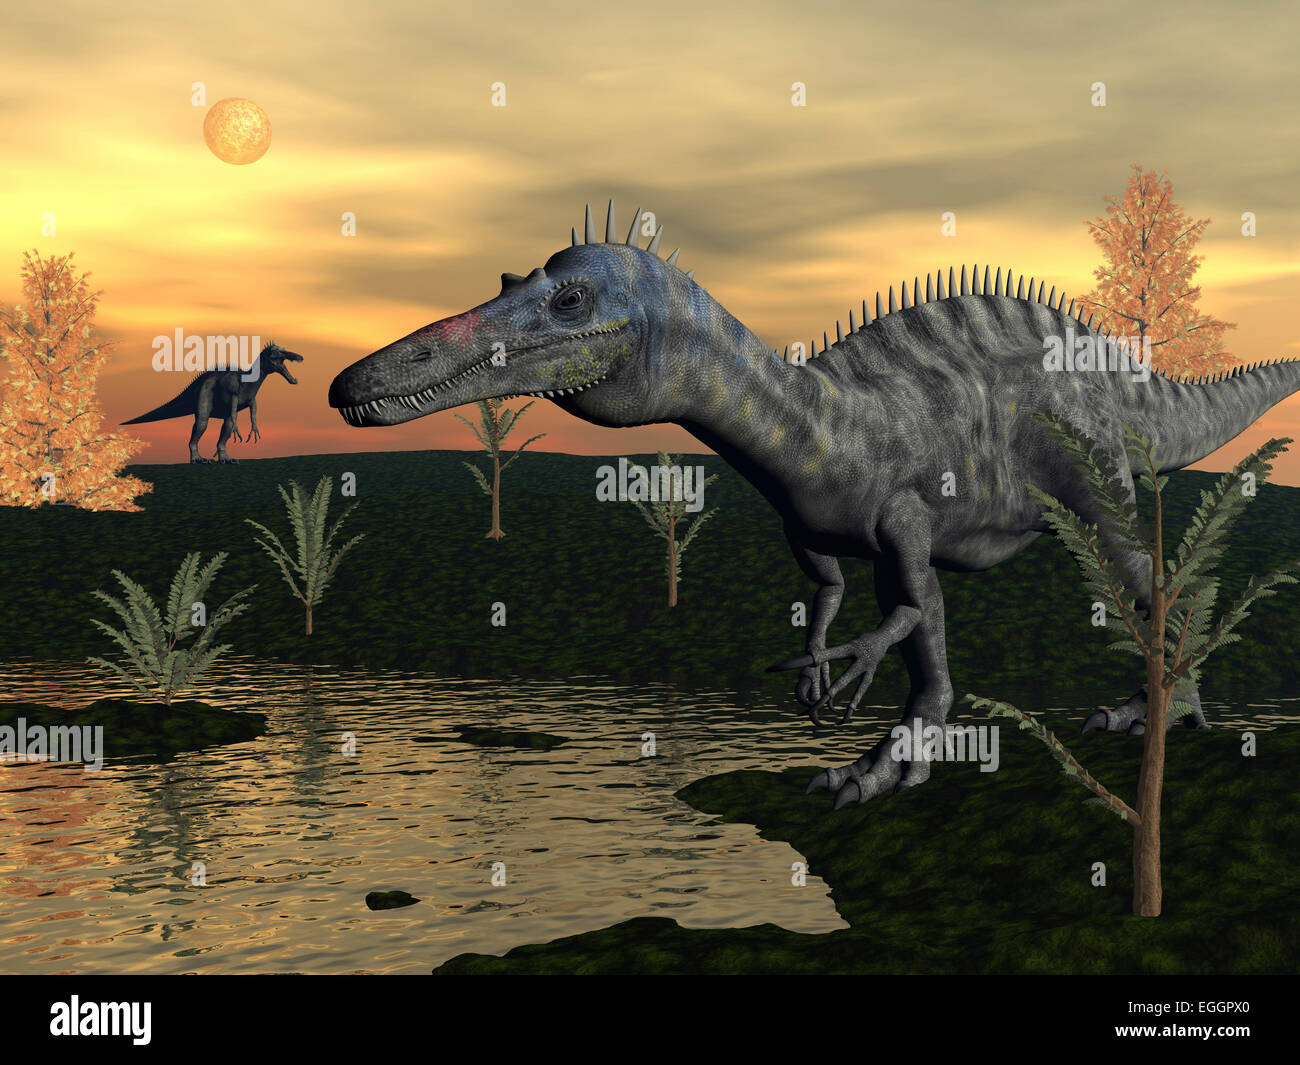 Dinosaures Suchomimus marche à côté d'étang au coucher du soleil avec pachypteris et cyprès centenaires. Banque D'Images